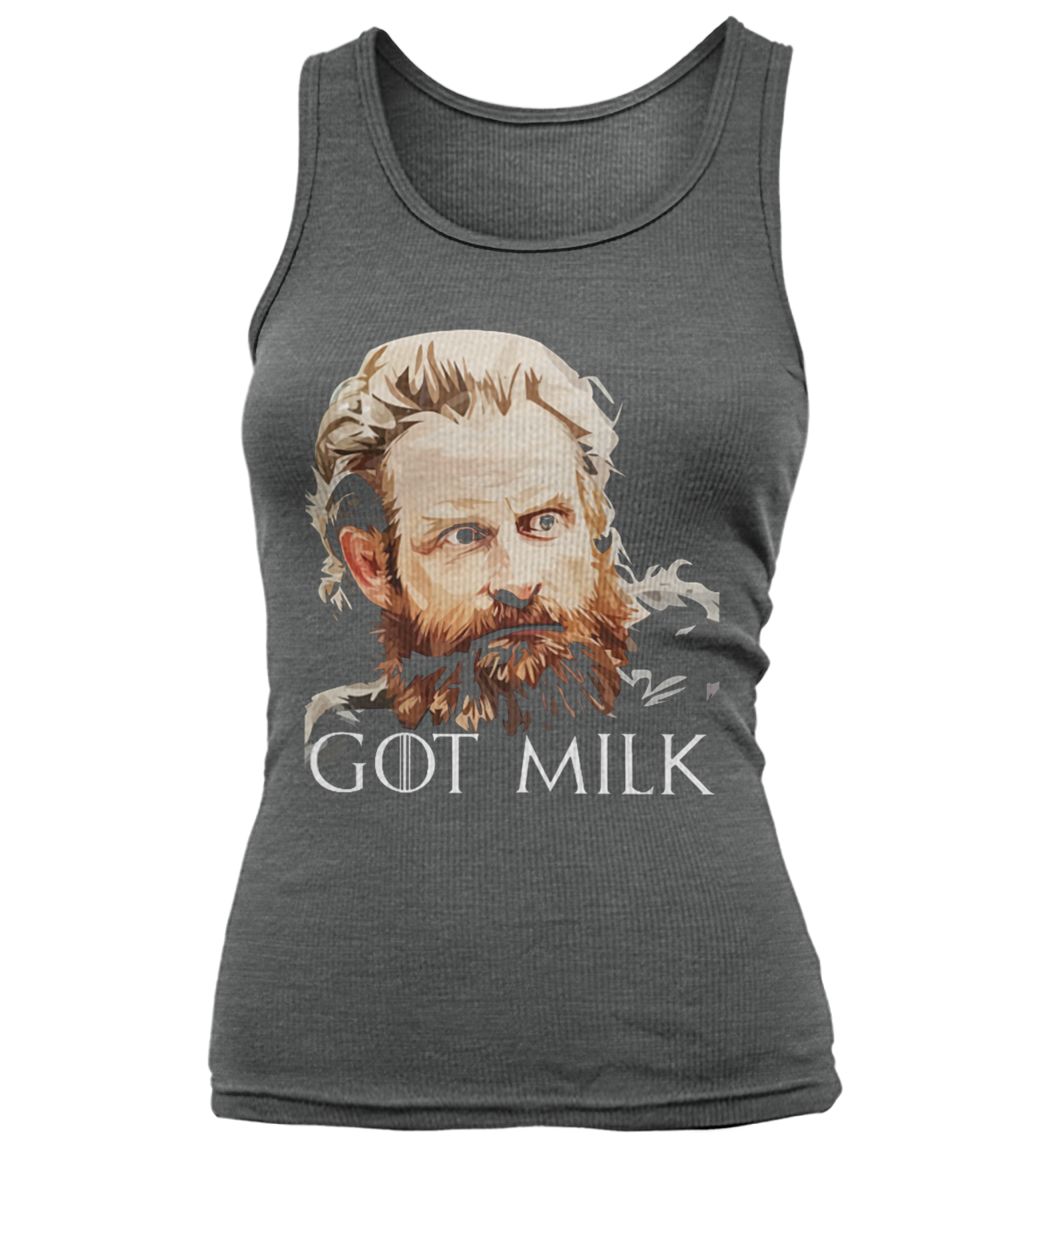 Game of thrones tormund giantsbane got milk women's tank top